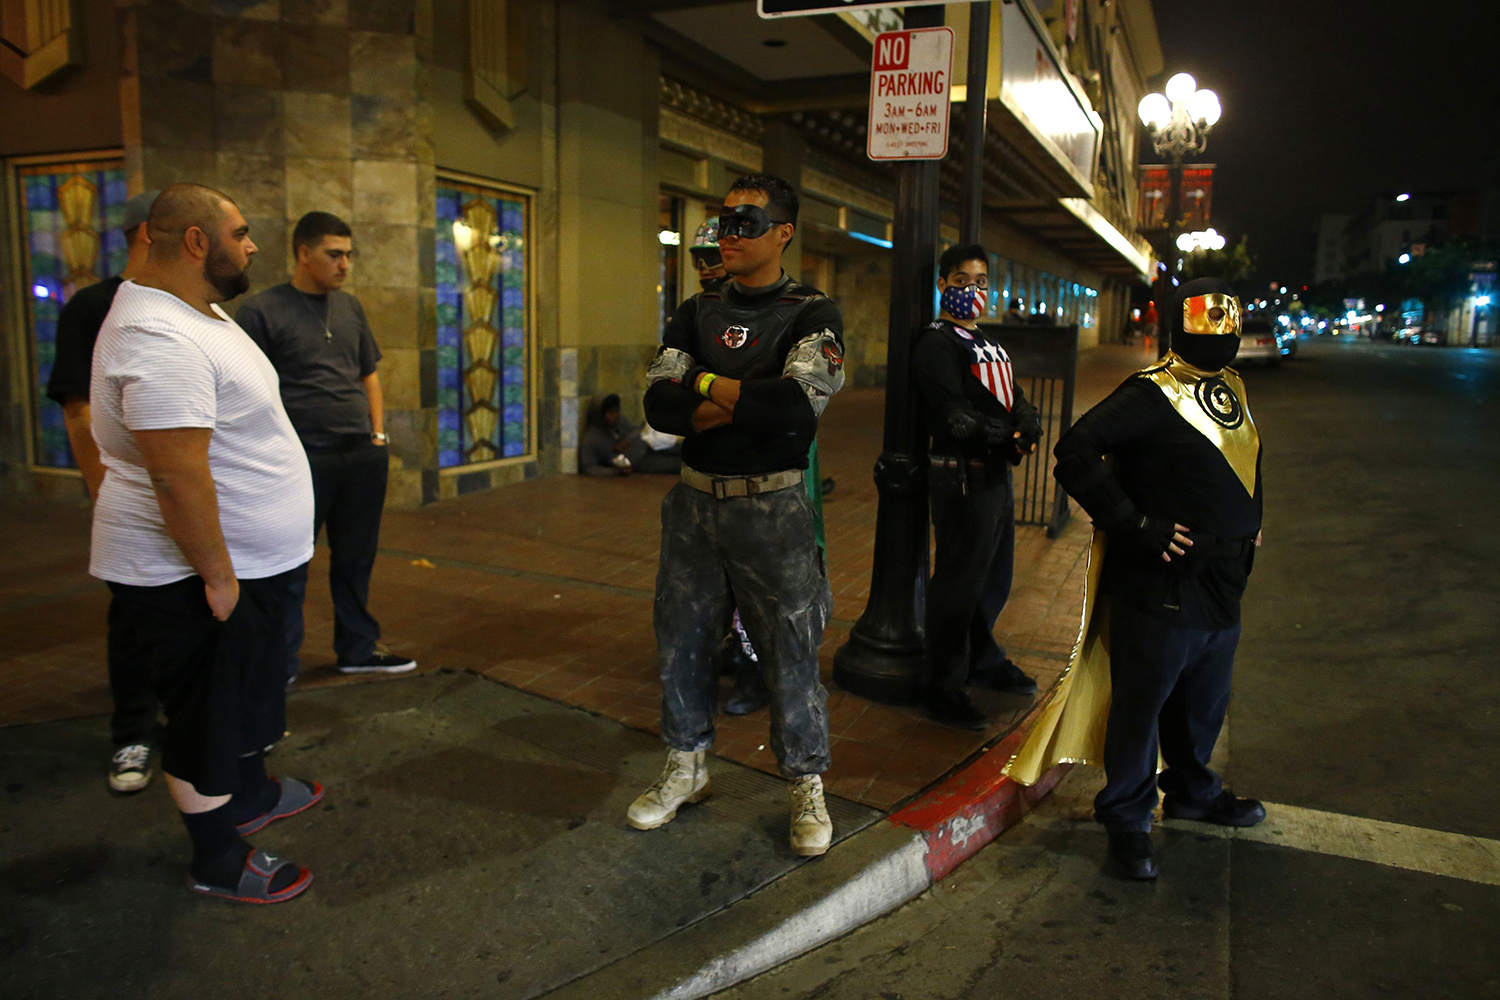 Voluntarios disfrazados de superhéroes patrullan las calles de San Diego.